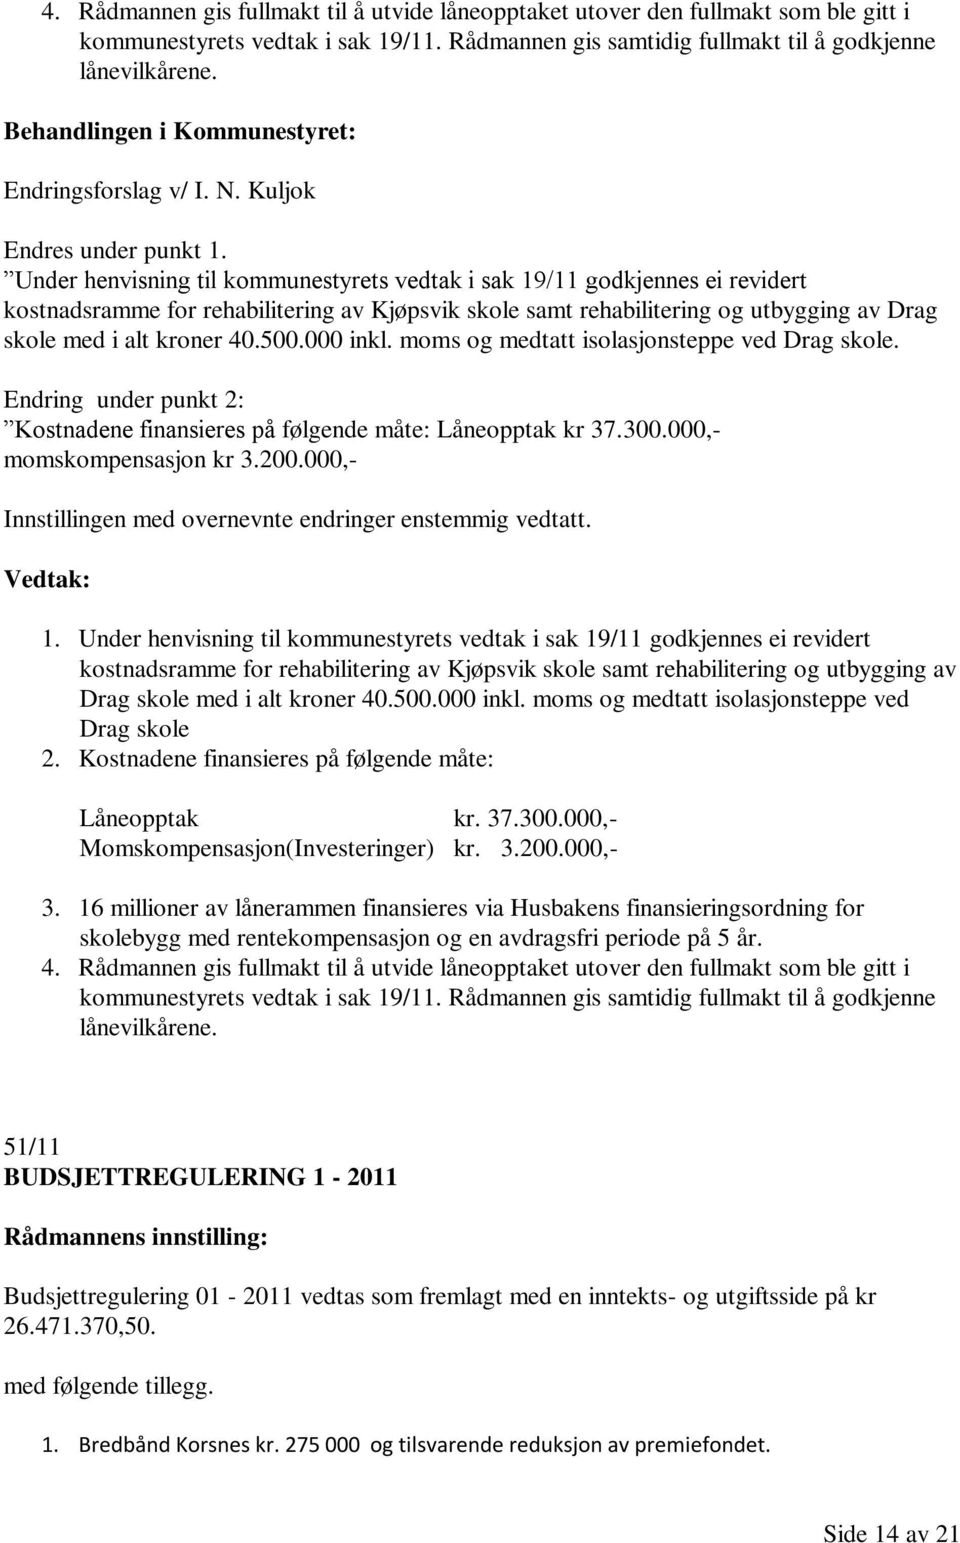 Under henvisning til kommunestyrets vedtak i sak 19/11 godkjennes ei revidert kostnadsramme for rehabilitering av Kjøpsvik skole samt rehabilitering og utbygging av Drag skole med i alt kroner 40.500.